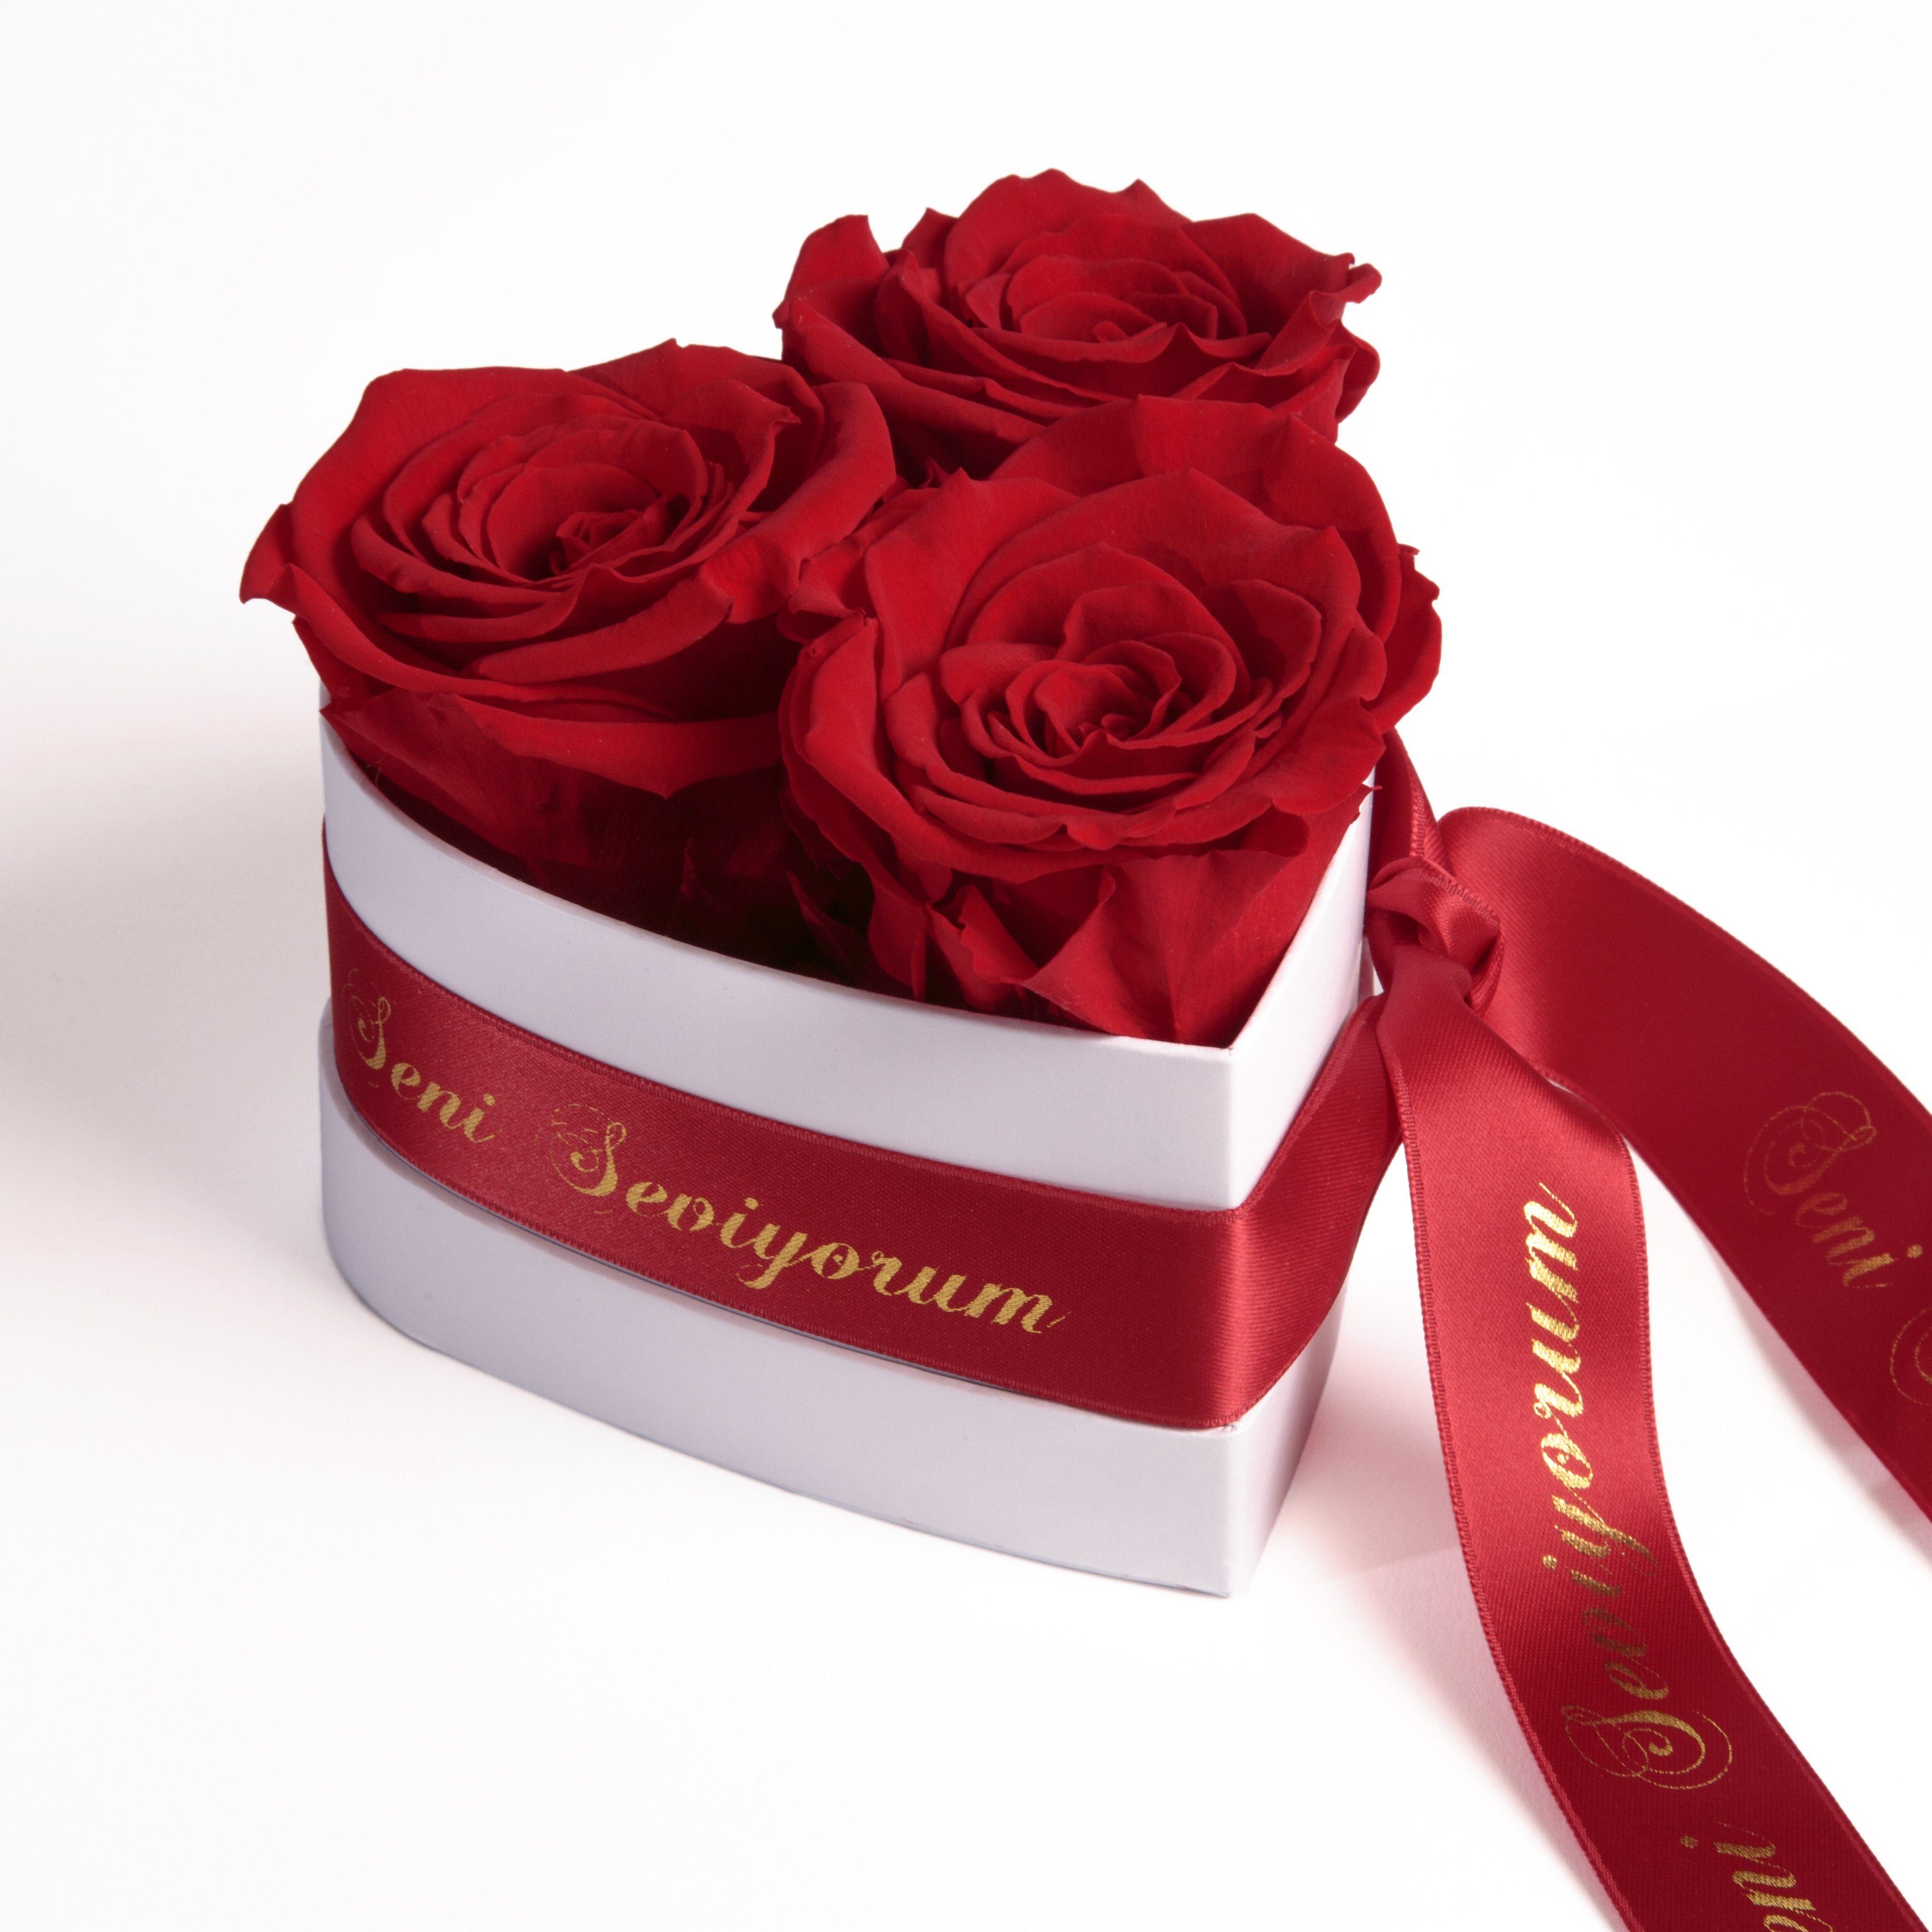 Kunstblume Seni Seviyorum Infinity Rosenbox Herz 3 echte Rosen konserviert Rose, ROSEMARIE SCHULZ Heidelberg, Höhe 10 cm, echte Rosen lang haltbar Rot